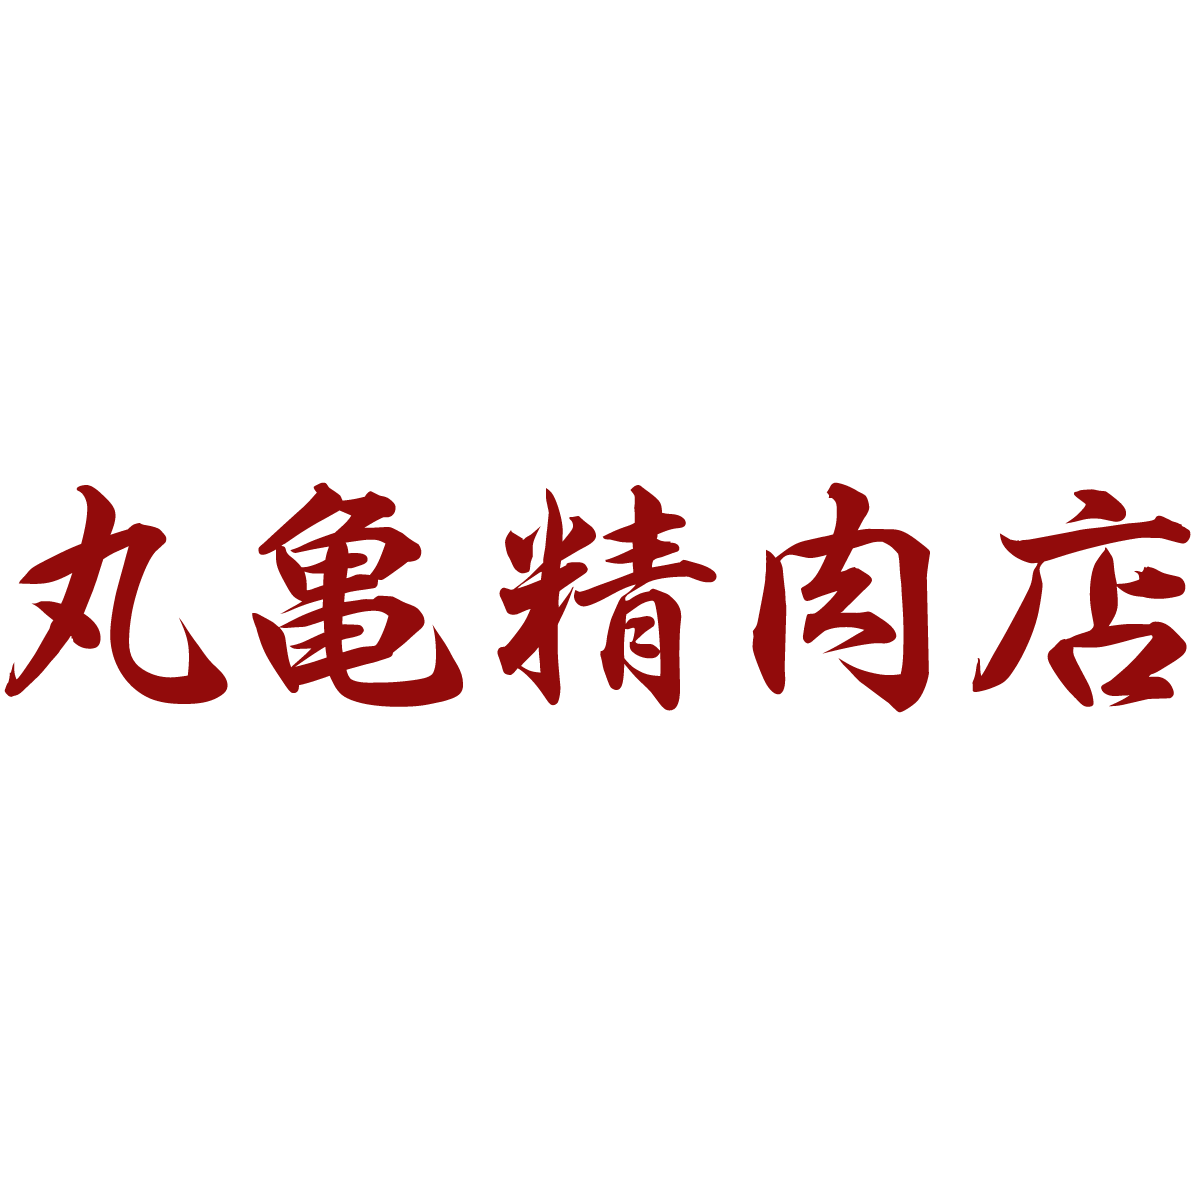 丸亀精肉店 Logo